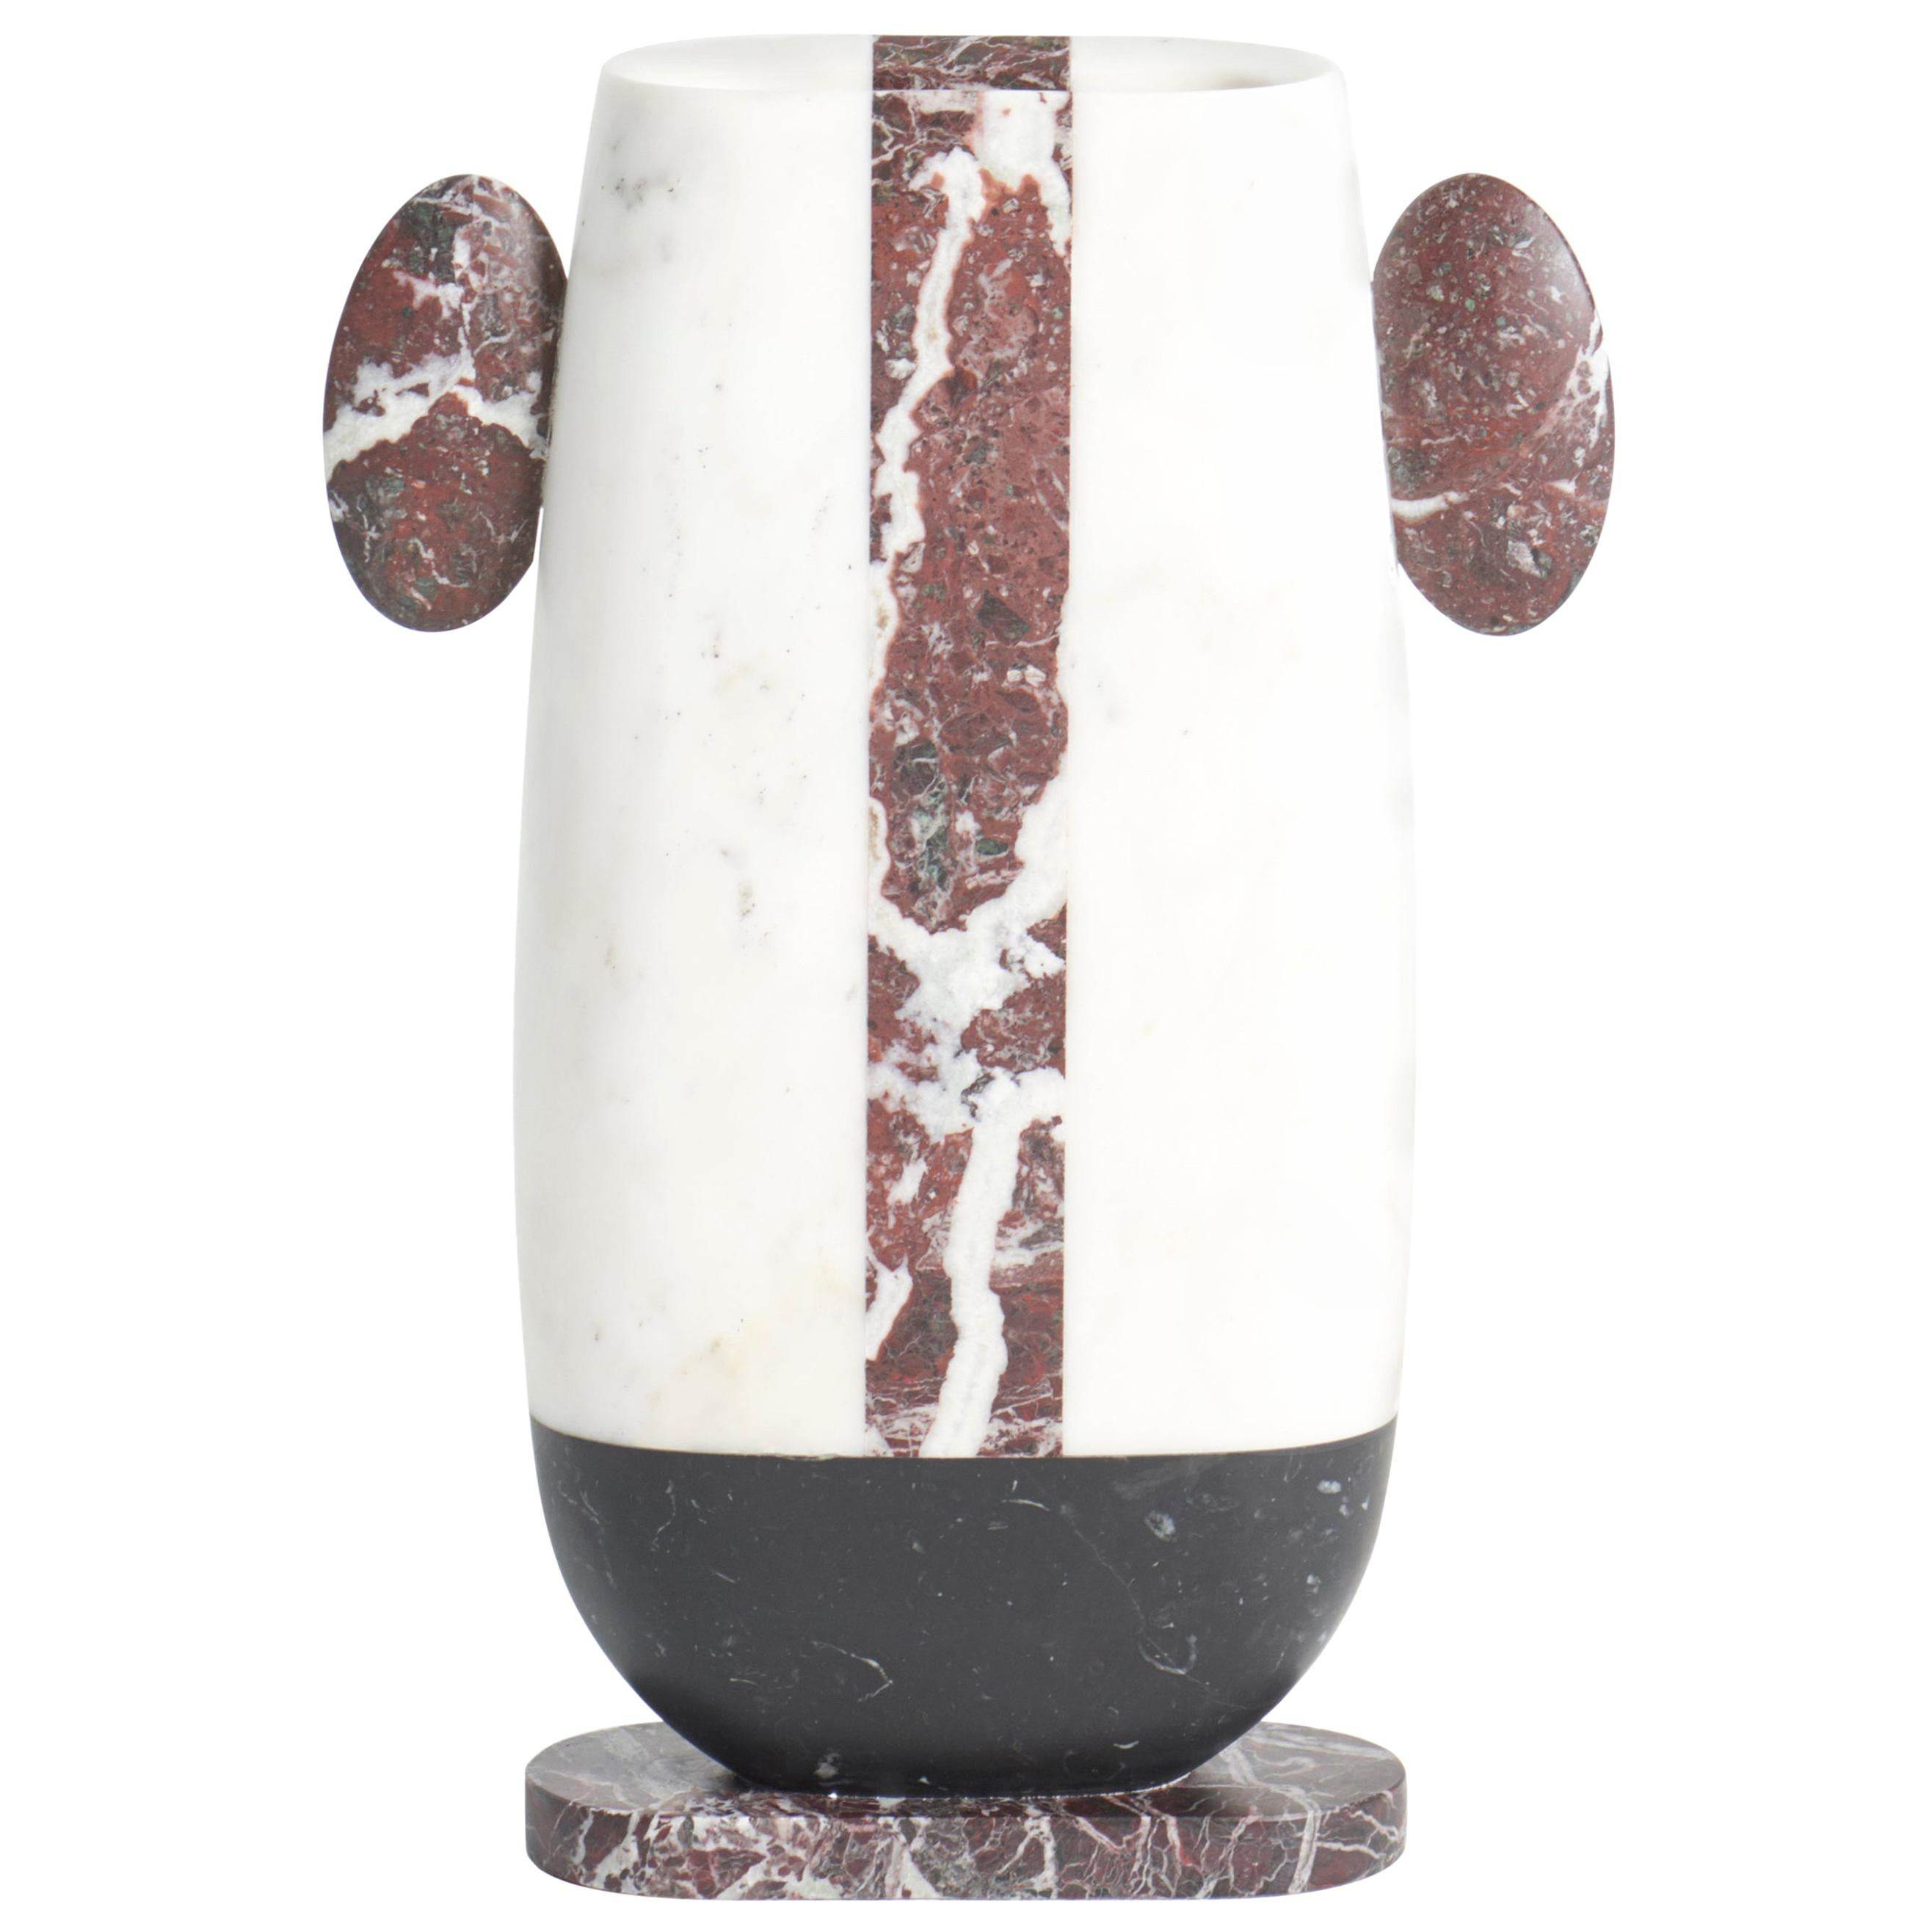 Vase moderne en marbres blancs, noirs et rouges, créateur Matteo Cibic Stock